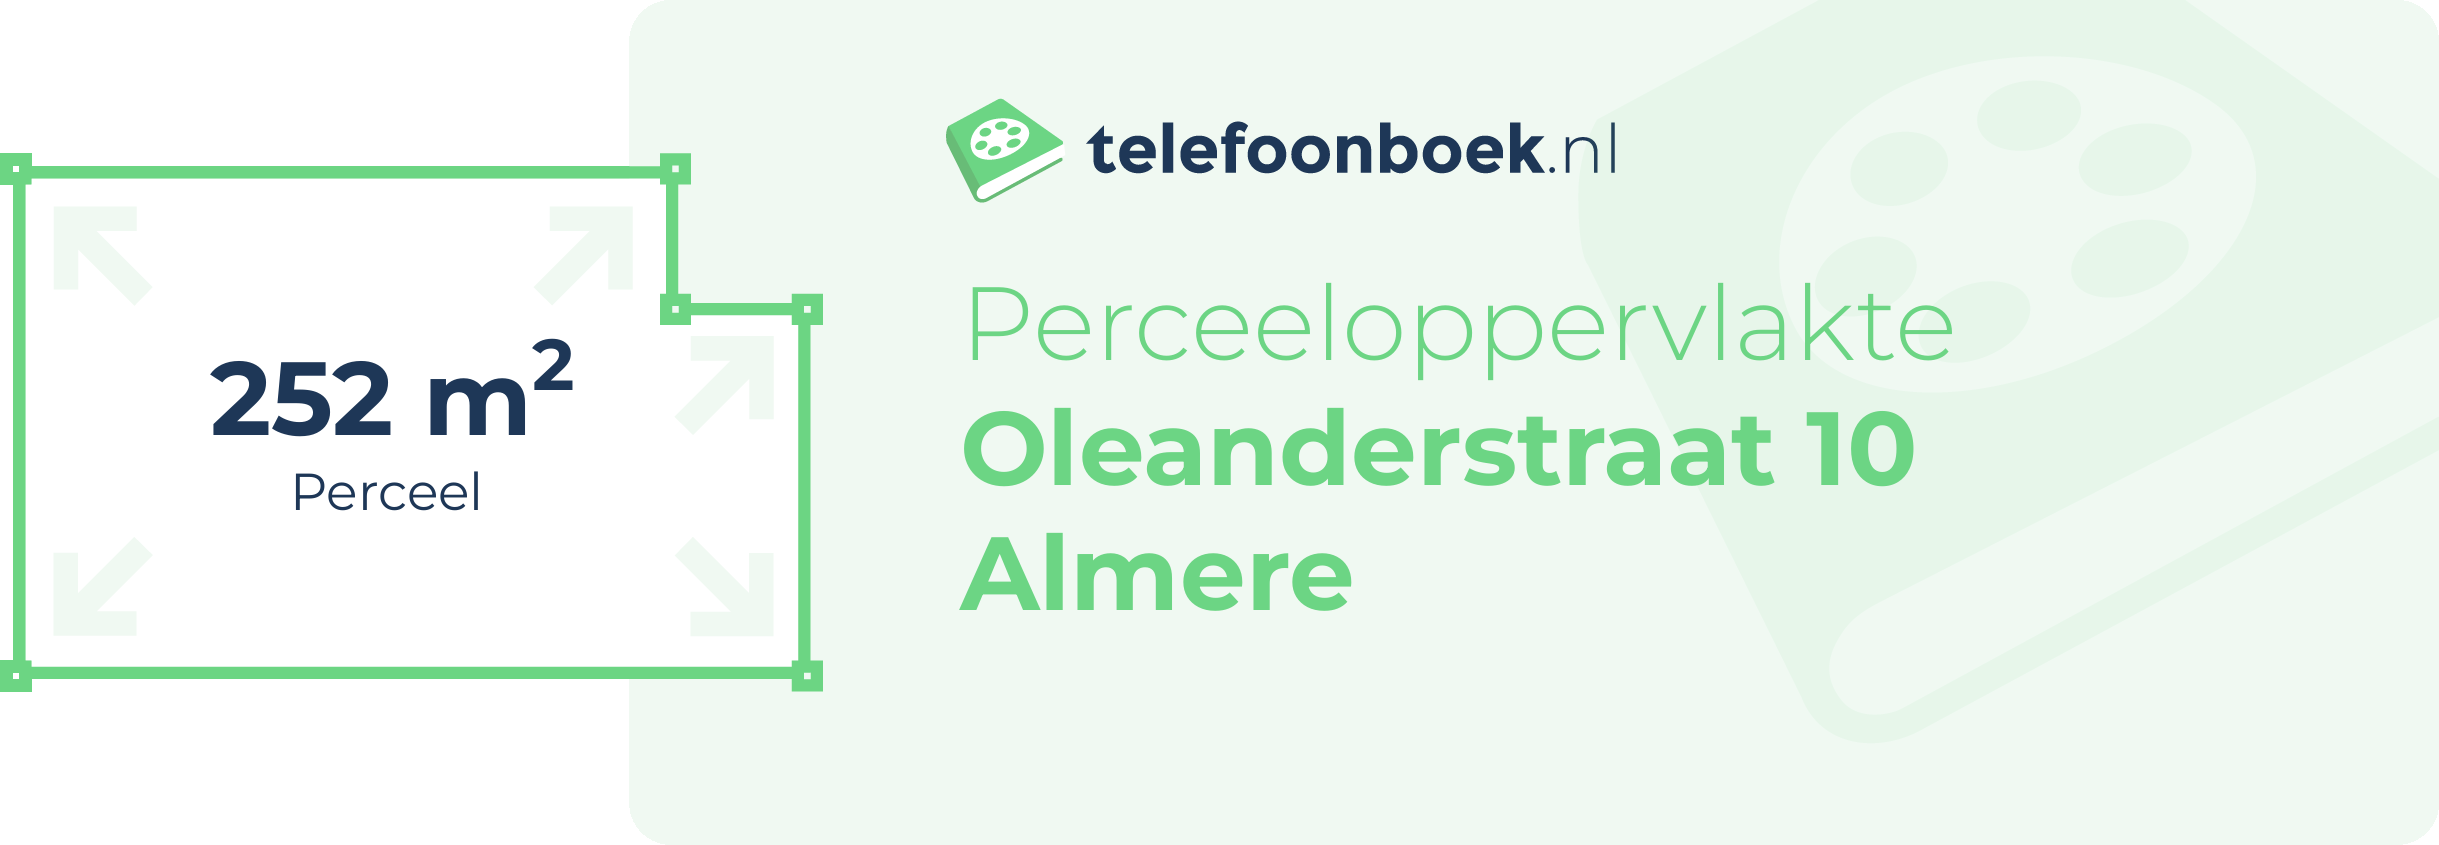 Perceeloppervlakte Oleanderstraat 10 Almere